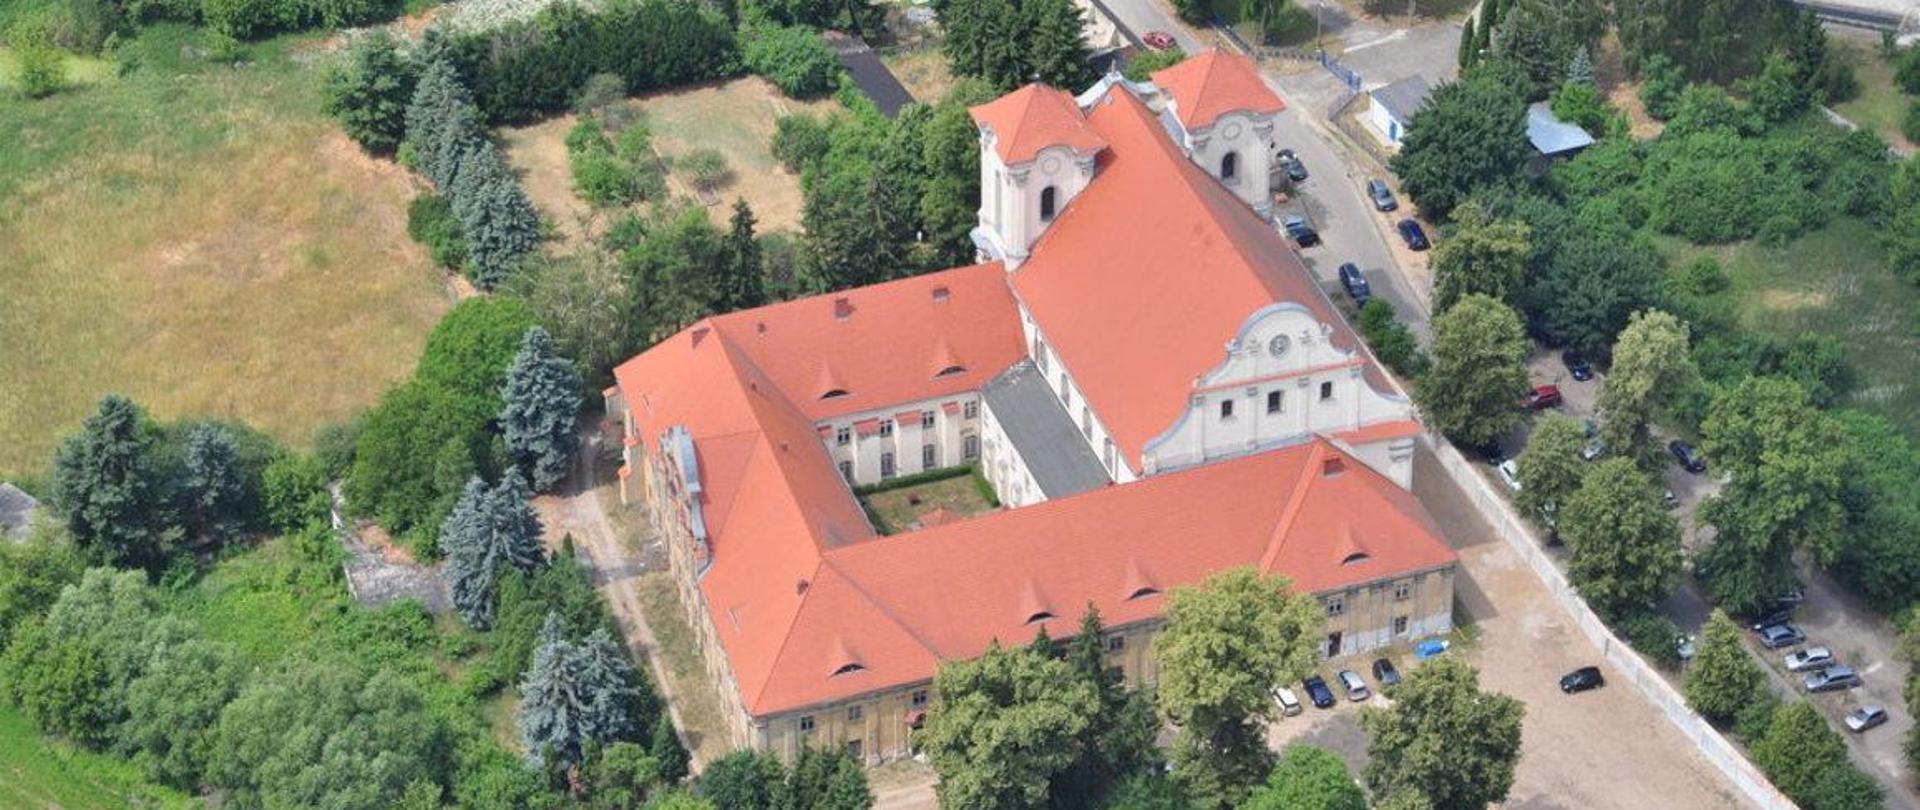 Zespól klasztorny w Wągrowcu, fot. P. Wroniecki